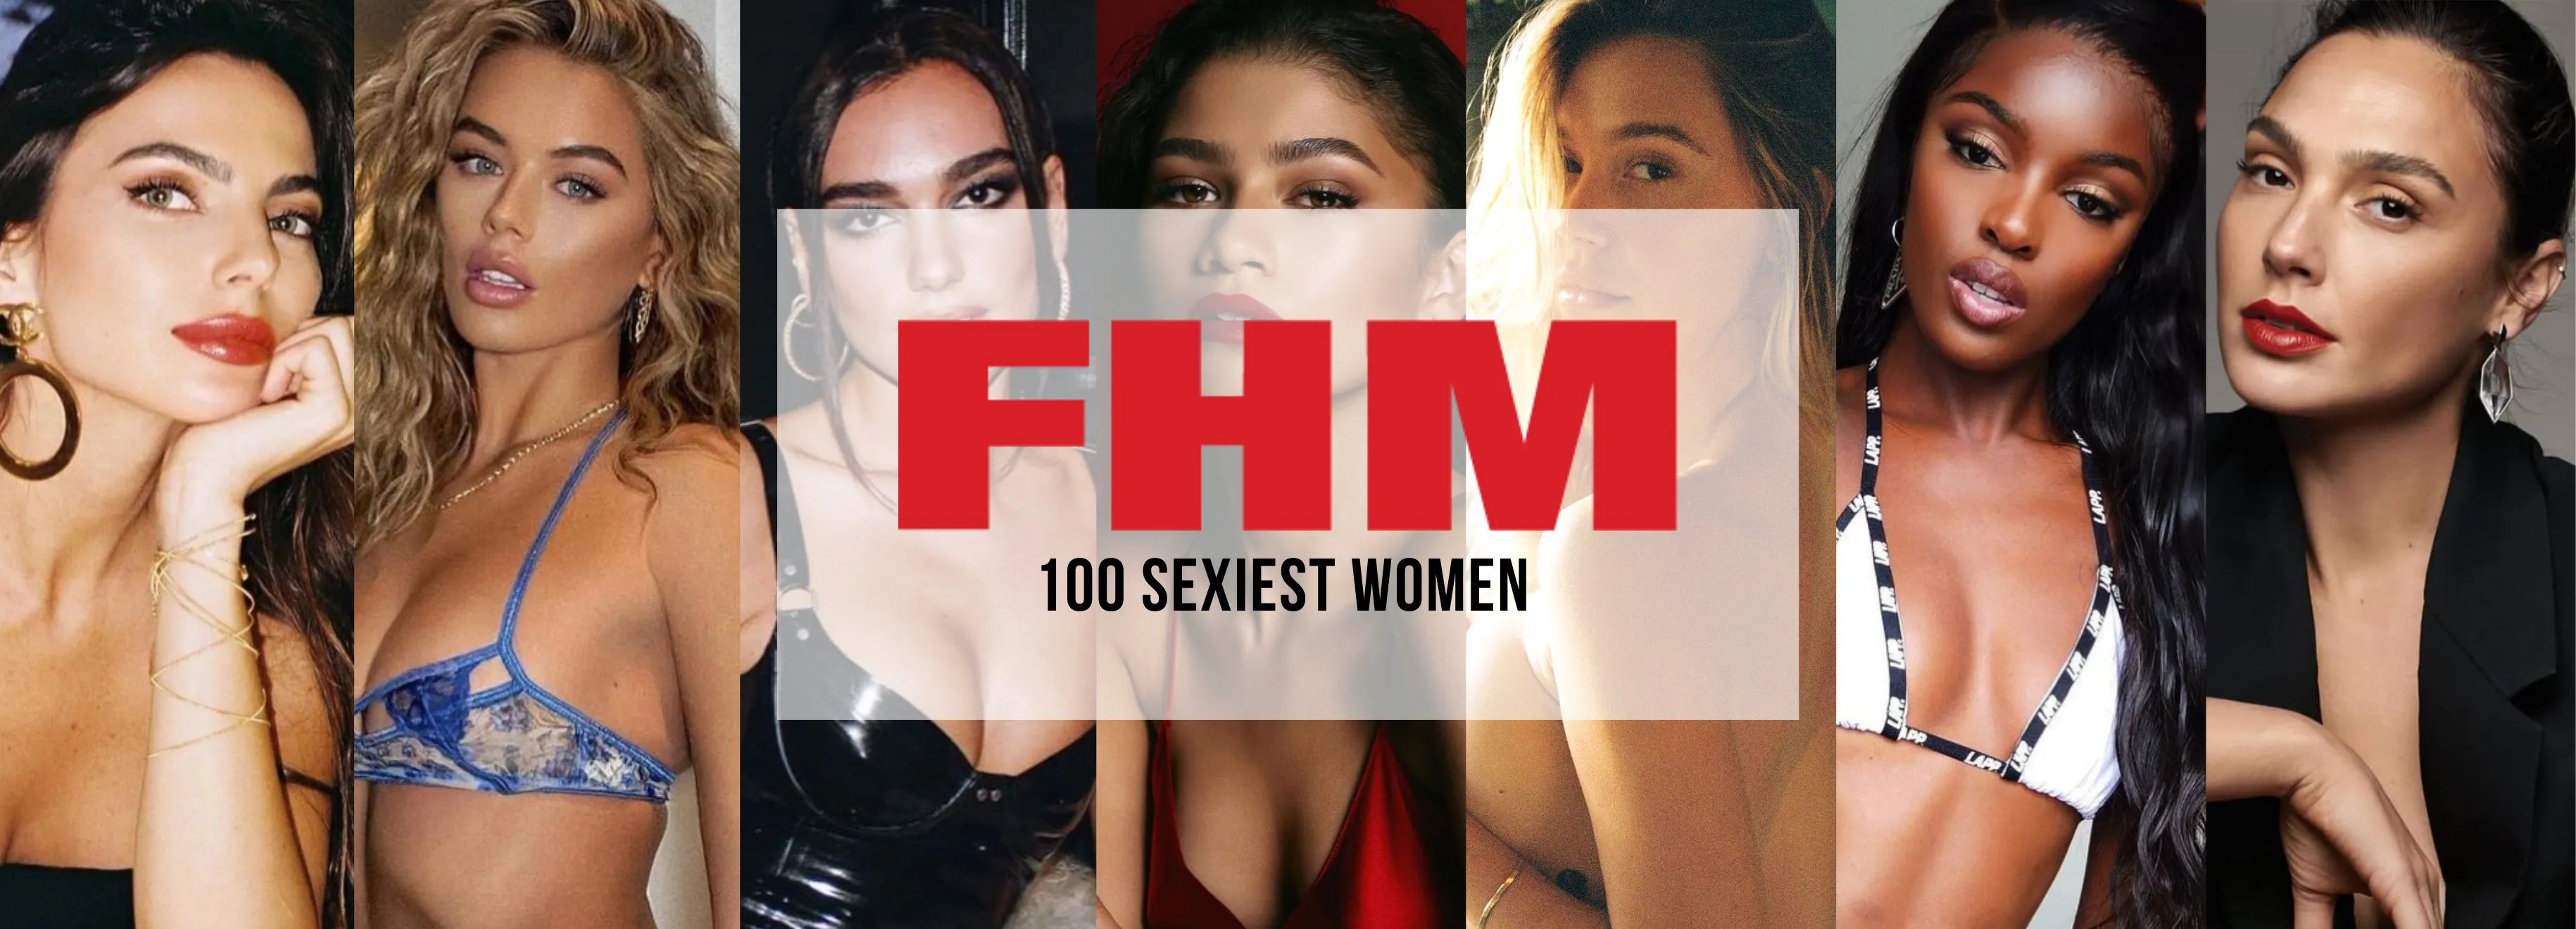 100 sexiest women 6